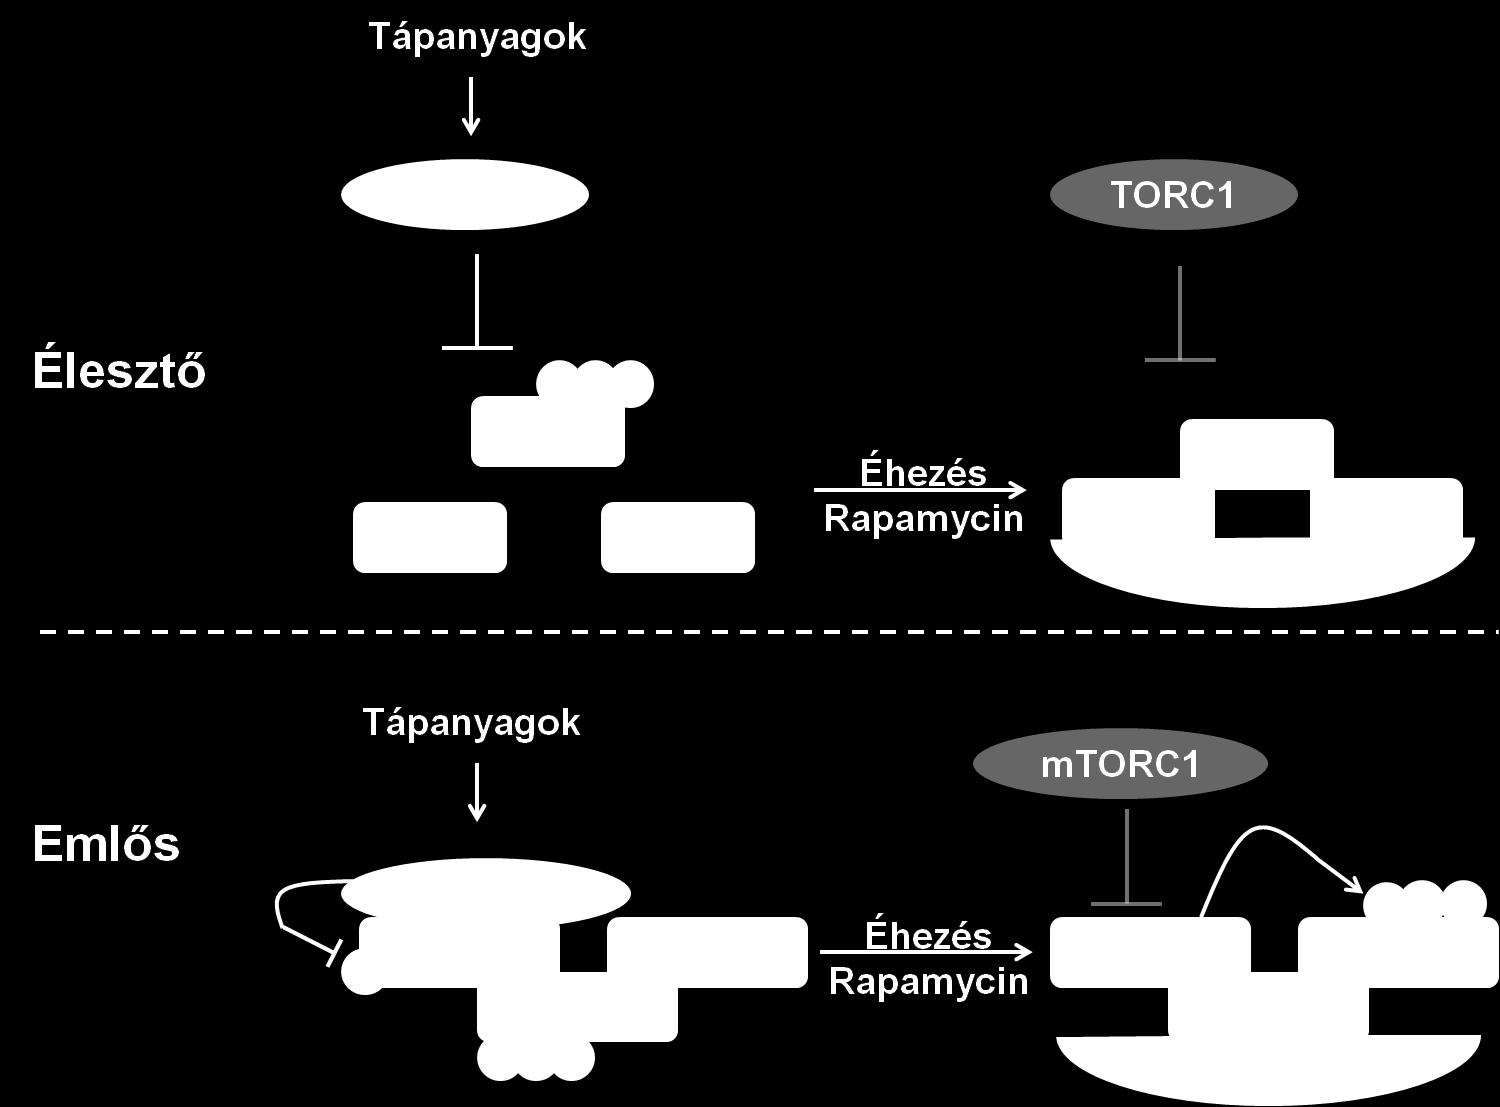 fehérjék. A komplex kialakulását élesztőben a TORC1 komplex (target of rapamycin complex 1) az Atg13 foszforilálása révén gátolja.